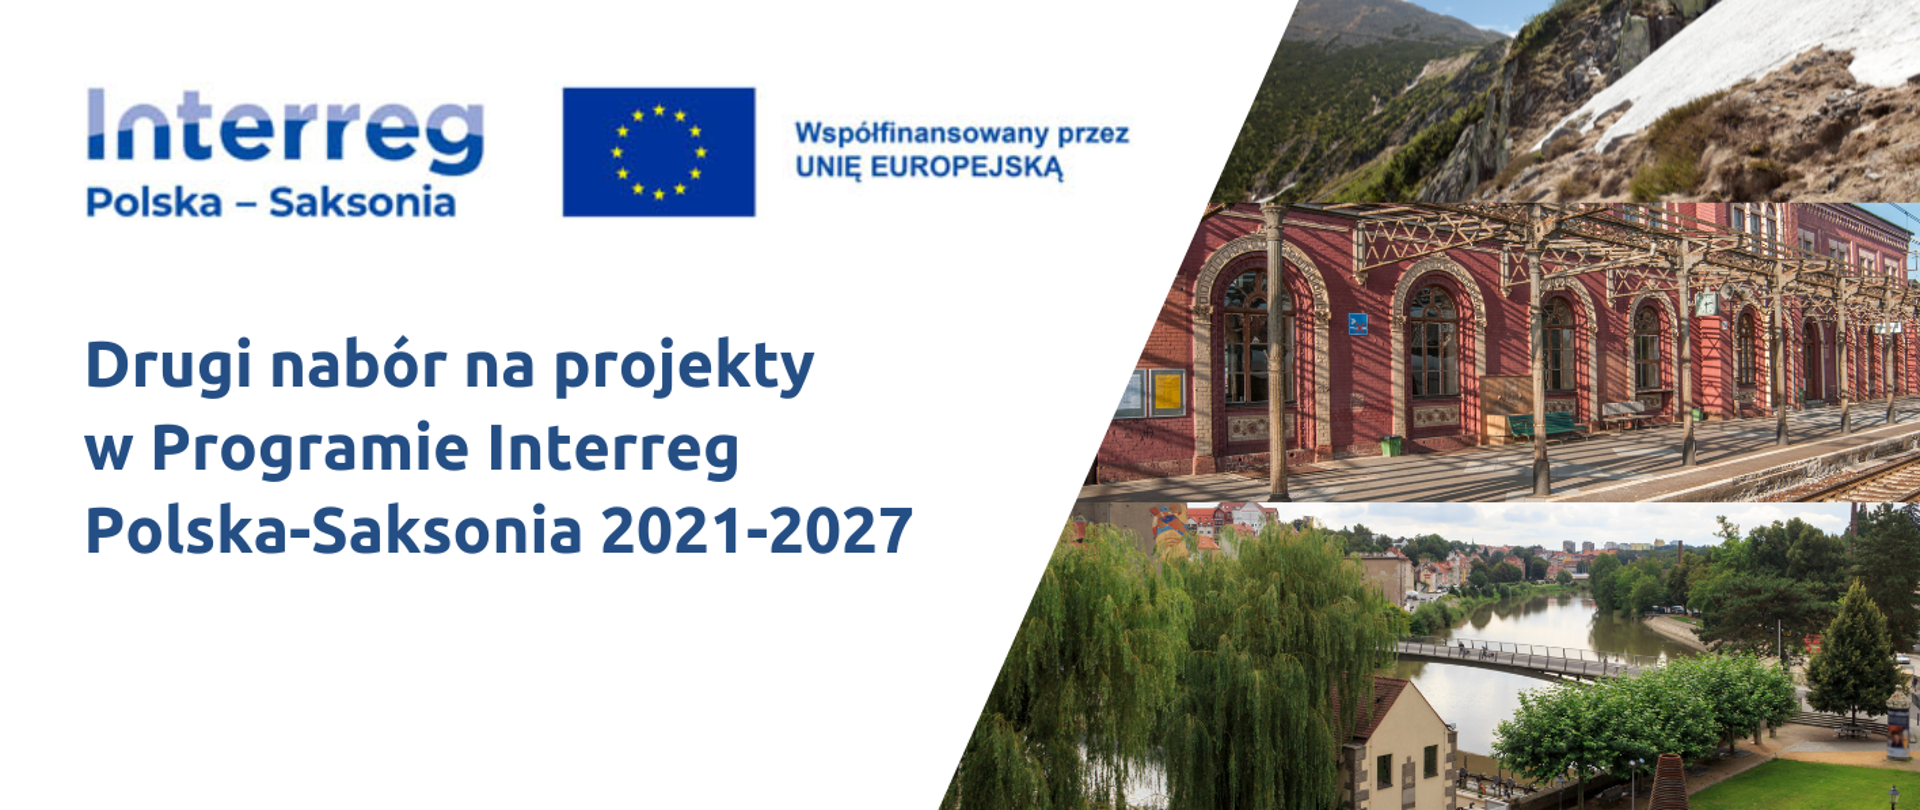 Kolejny nabór na projekty w Programie Interreg Polska-Saksonia 2021-2027.
